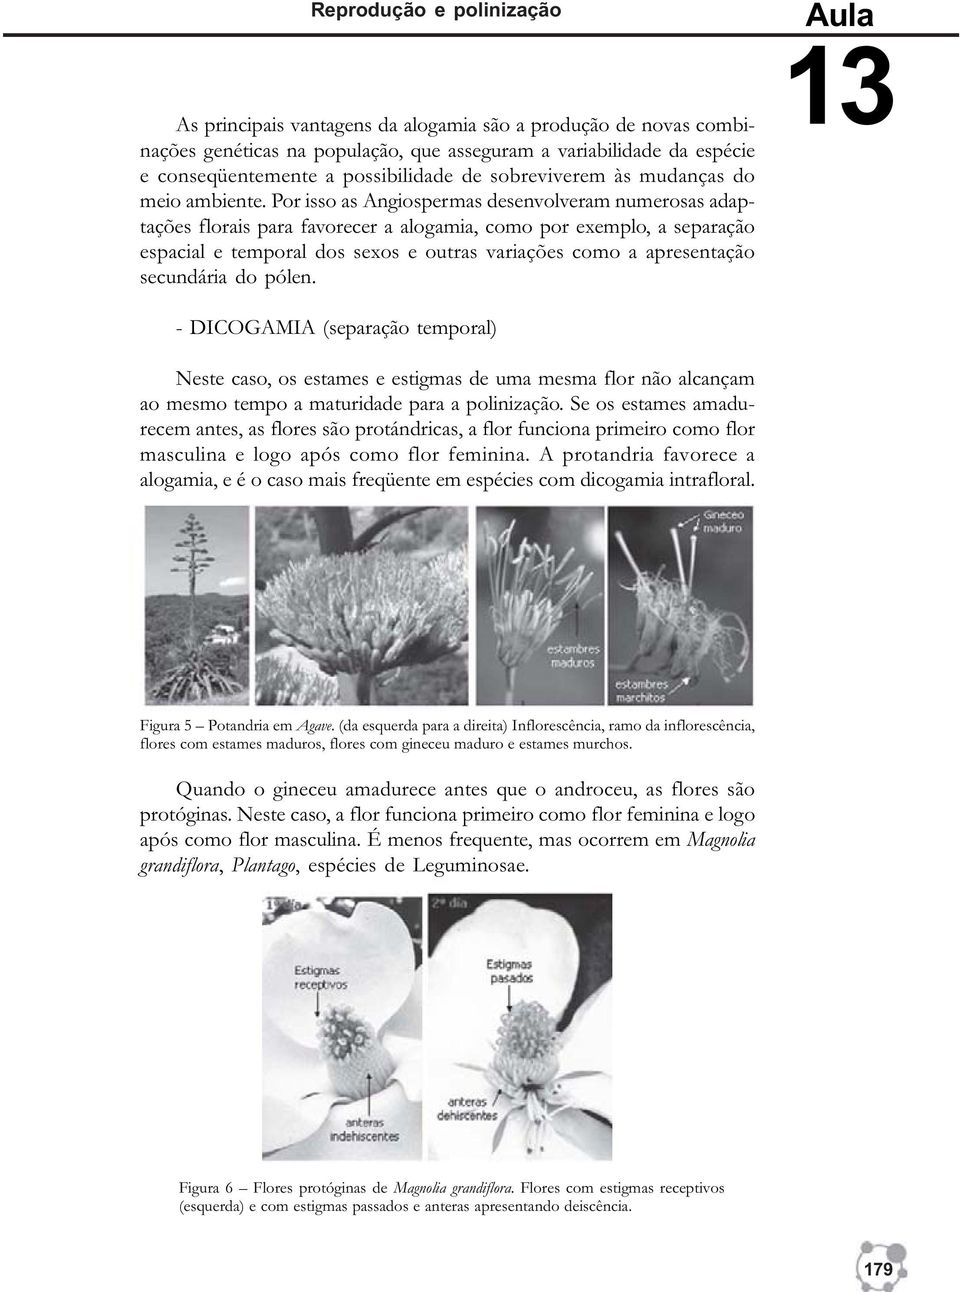 Por isso as Angiospermas desenvolveram numerosas adaptações florais para favorecer a alogamia, como por exemplo, a separação espacial e temporal dos sexos e outras variações como a apresentação